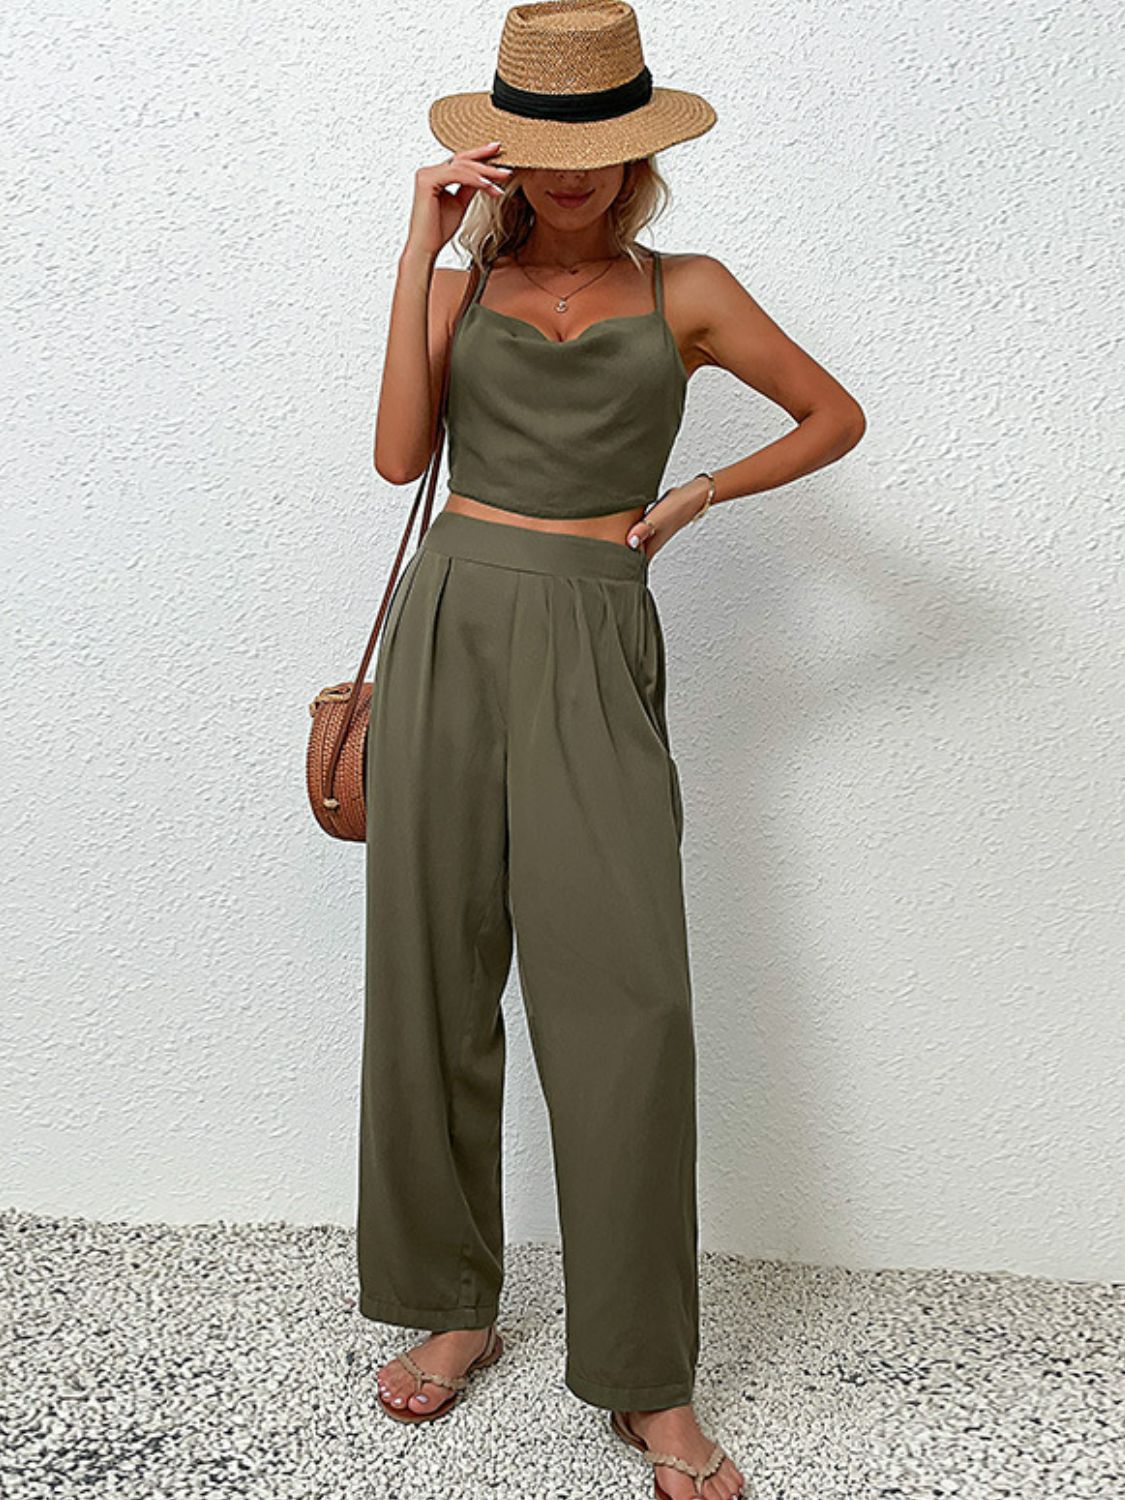 Crisscross Back Cropped Top and Pants Set | Women's Fashion Boutique Online - Alaena James Boutique